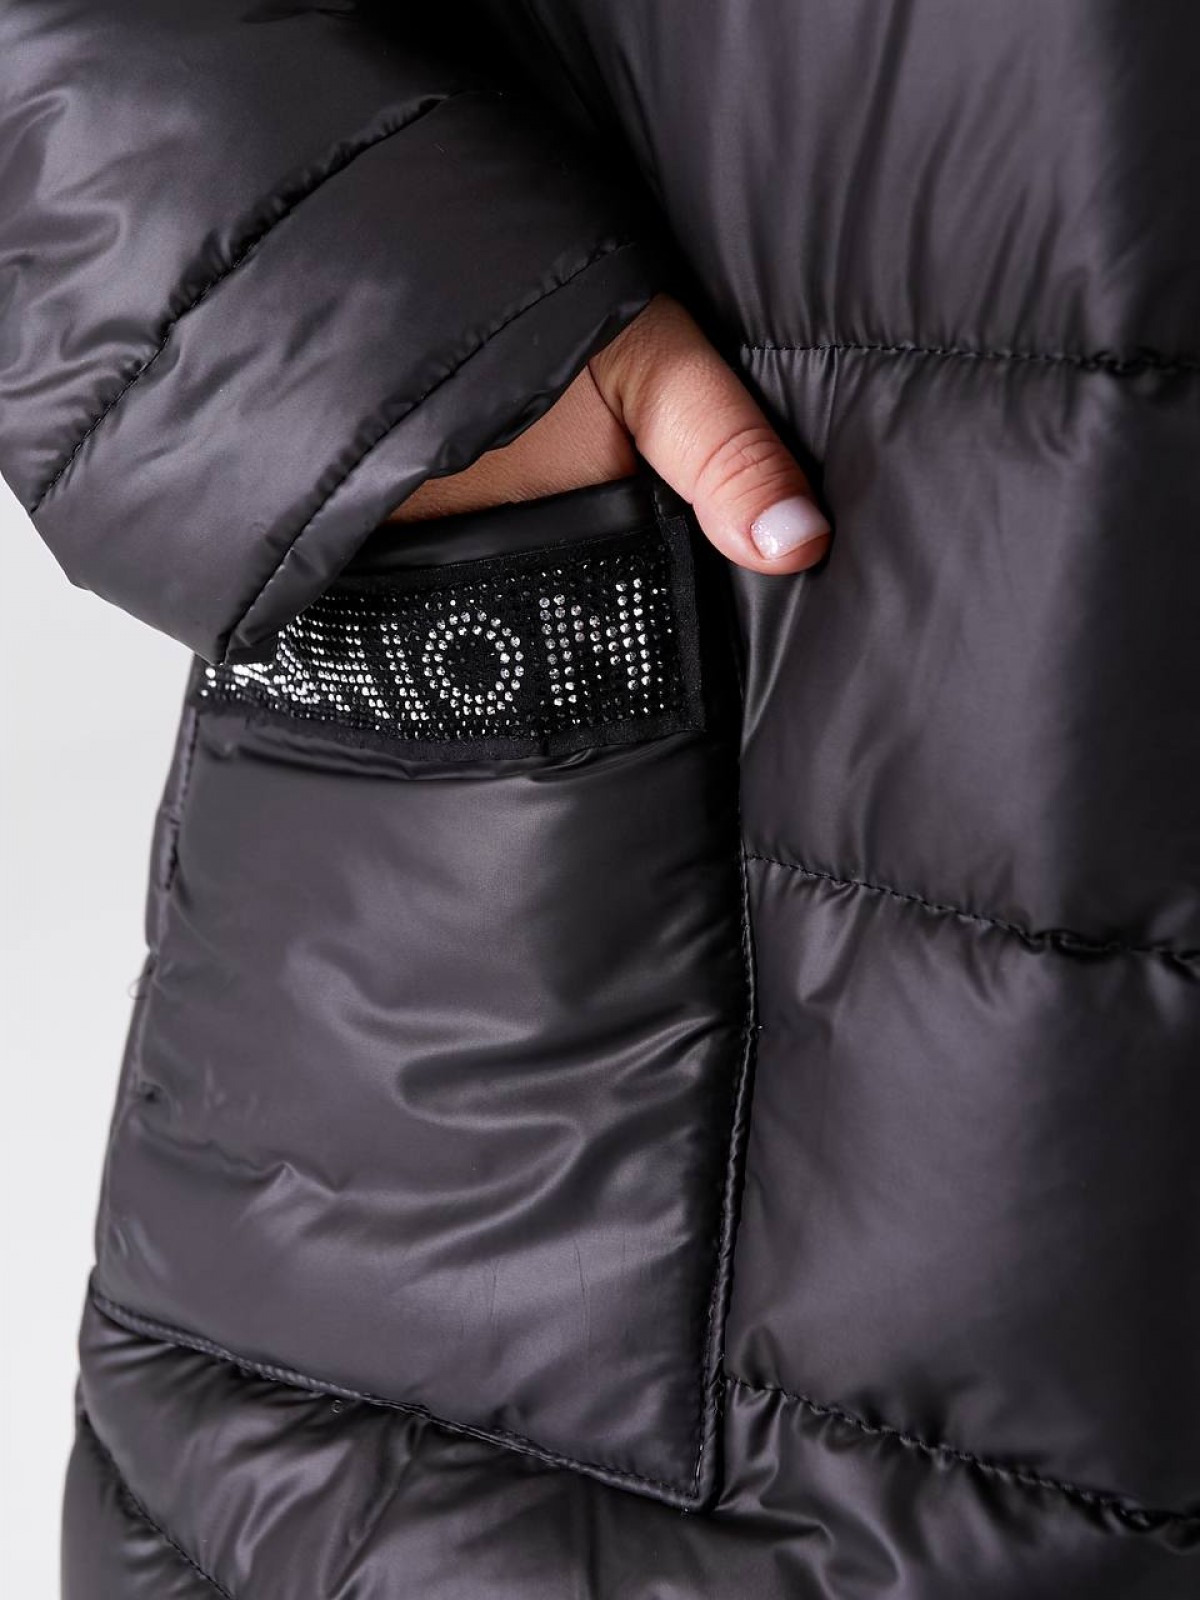 Жіноча куртка-пальто із плащової тканини колір чорний р.52/54 448518